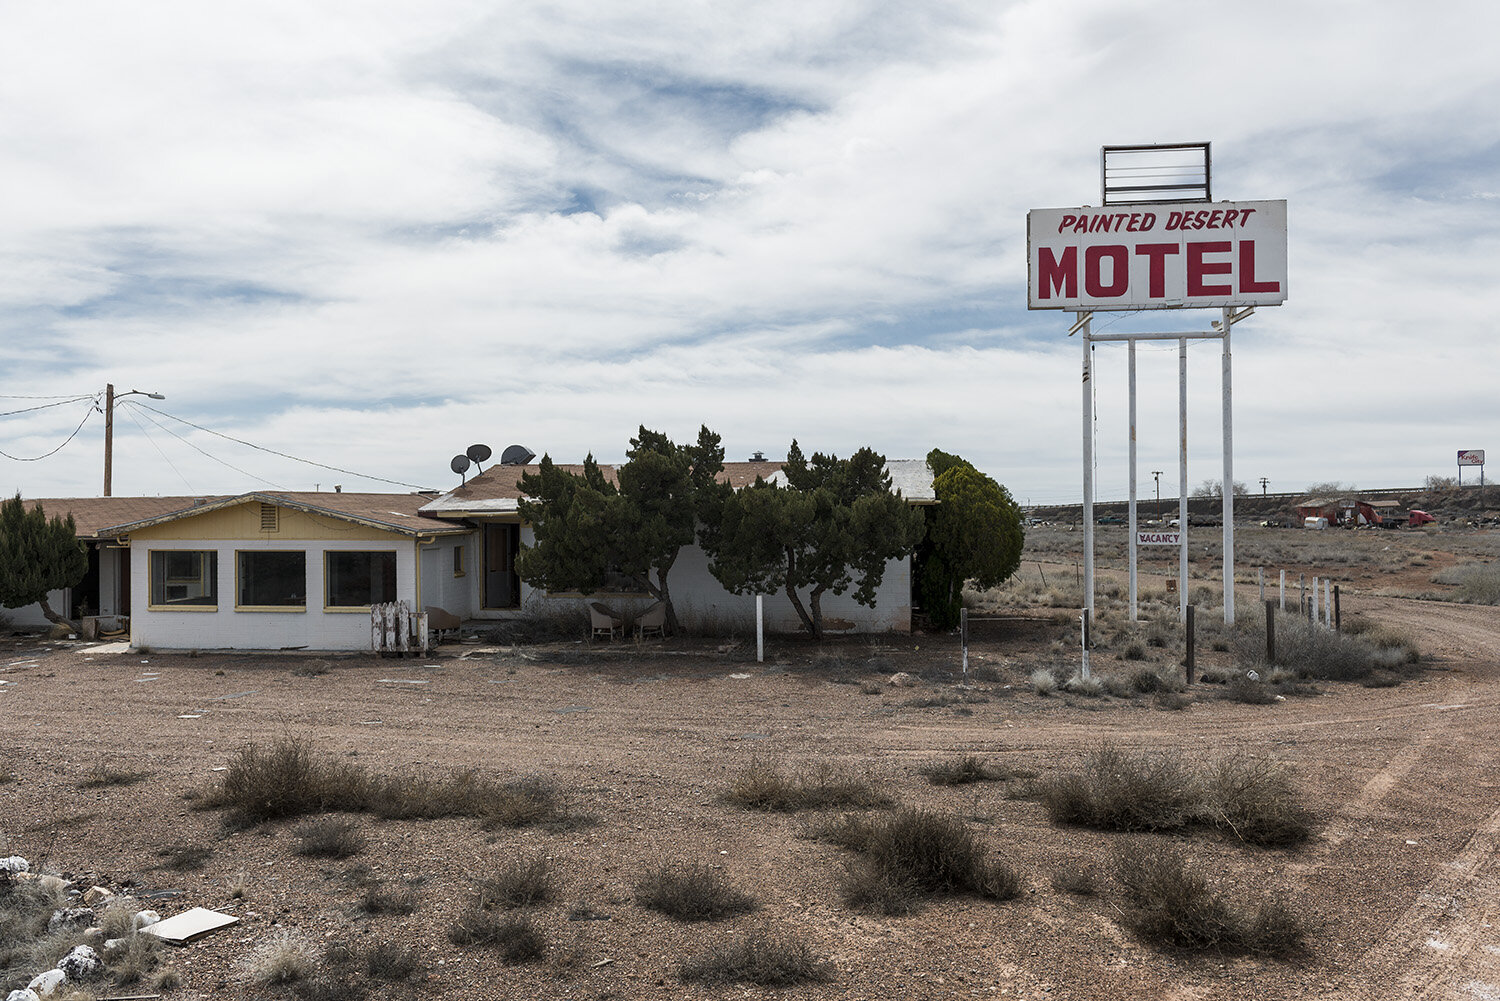 painted-desert-motel.jpg